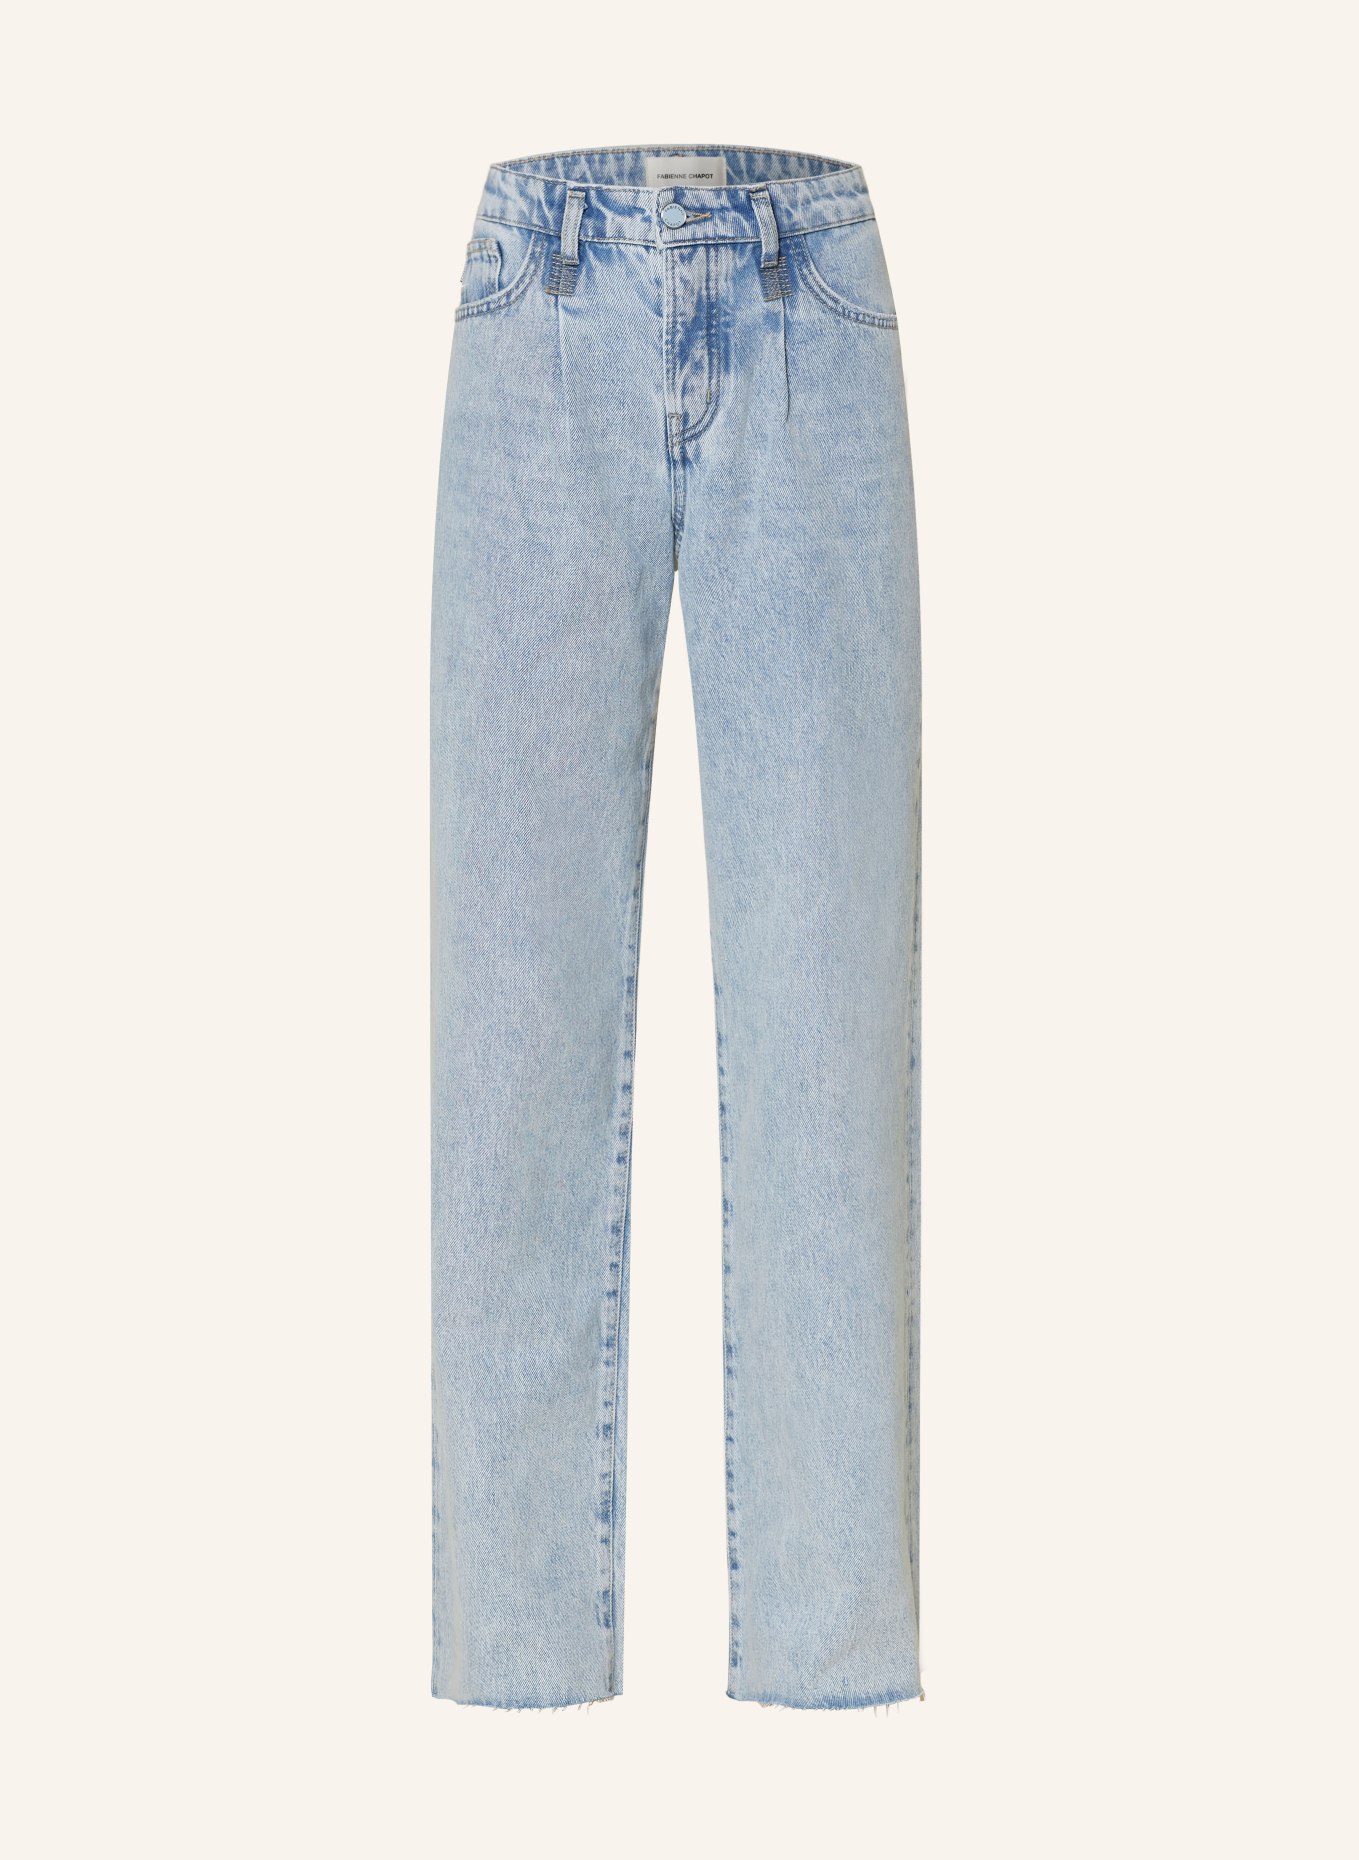 FABIENNE CHAPOT Jeans LUCY WIDE, Farbe: 3023 Faded Light Blue (Bild 1)